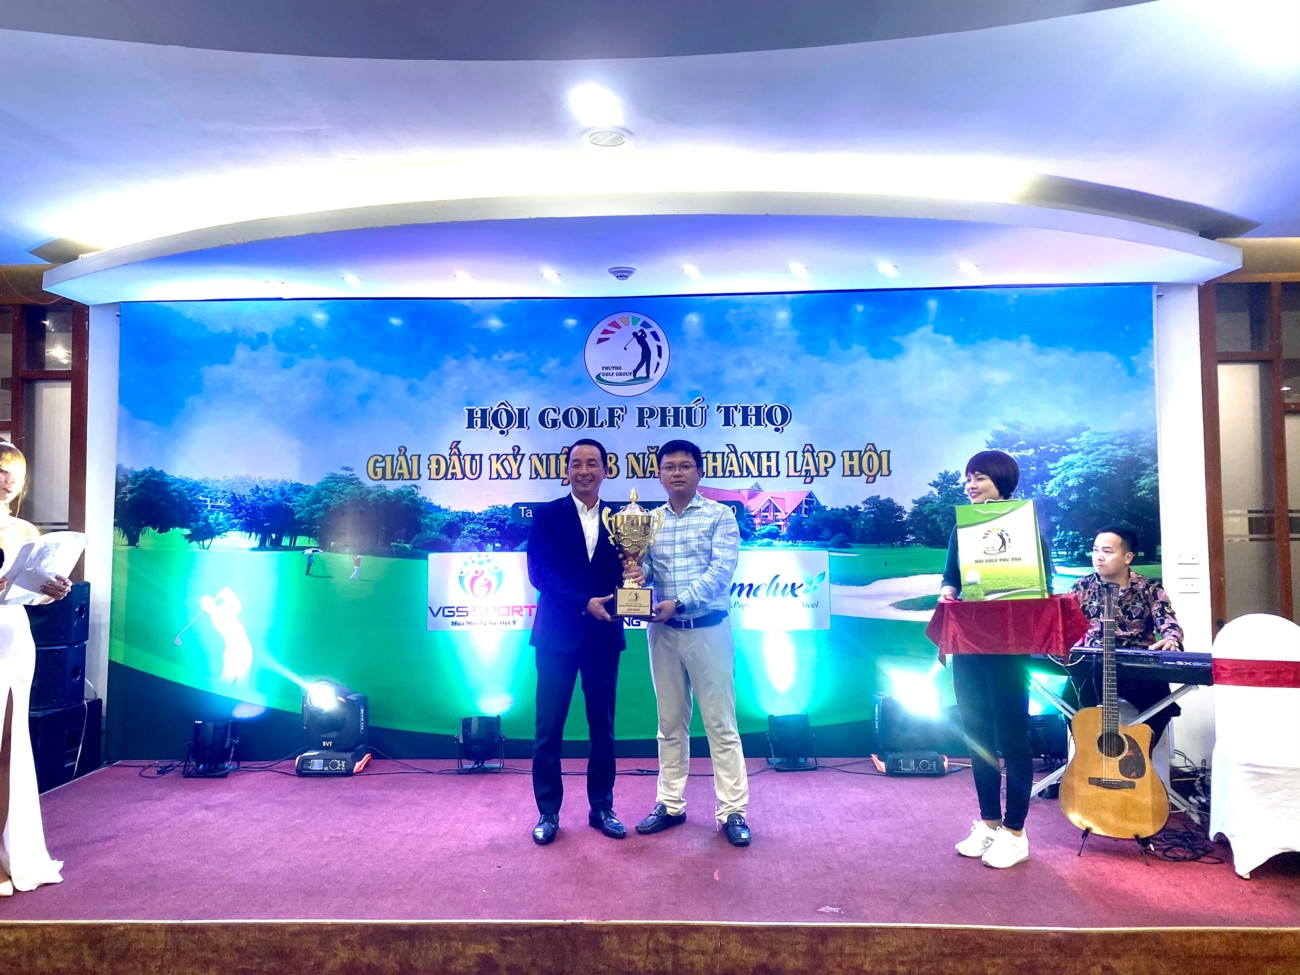 Golfer Nguyễn Trung Đức vô địch giải golf Kỷ niệm 8 năm thành lập Hội golf Phú Thọ - Ảnh 1.